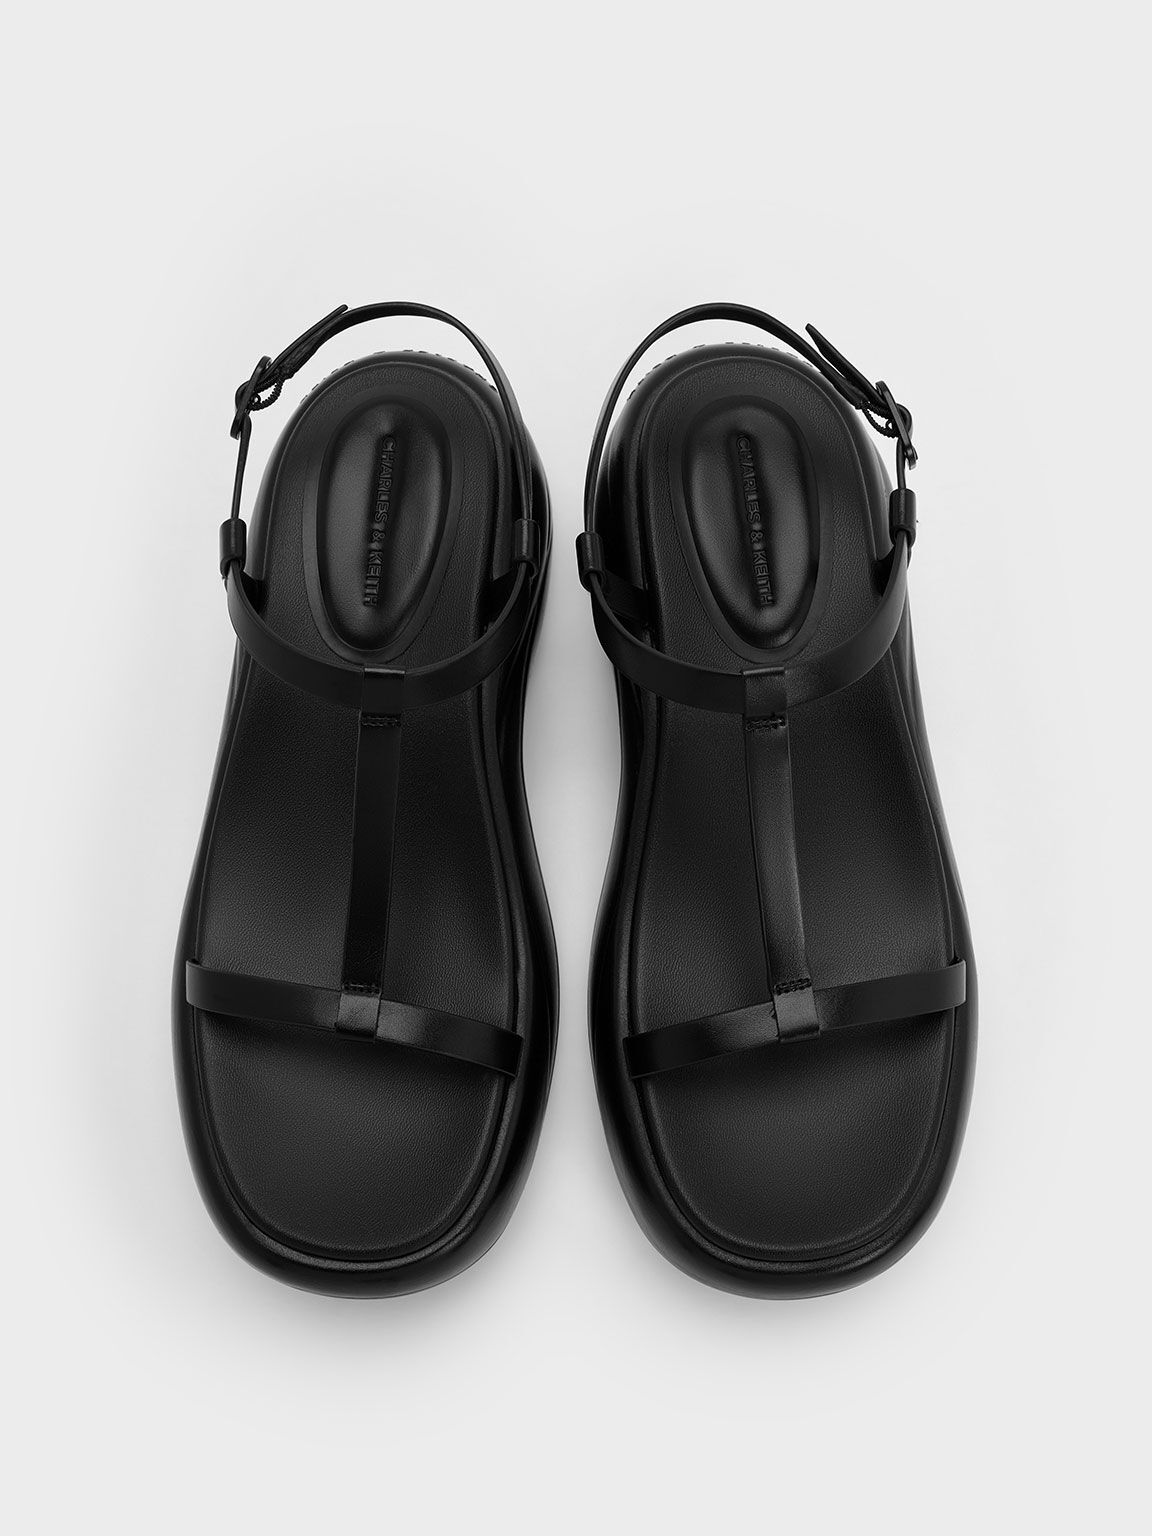 Sandalias deportivas de plataforma curvada con tira en T, Negro, hi-res